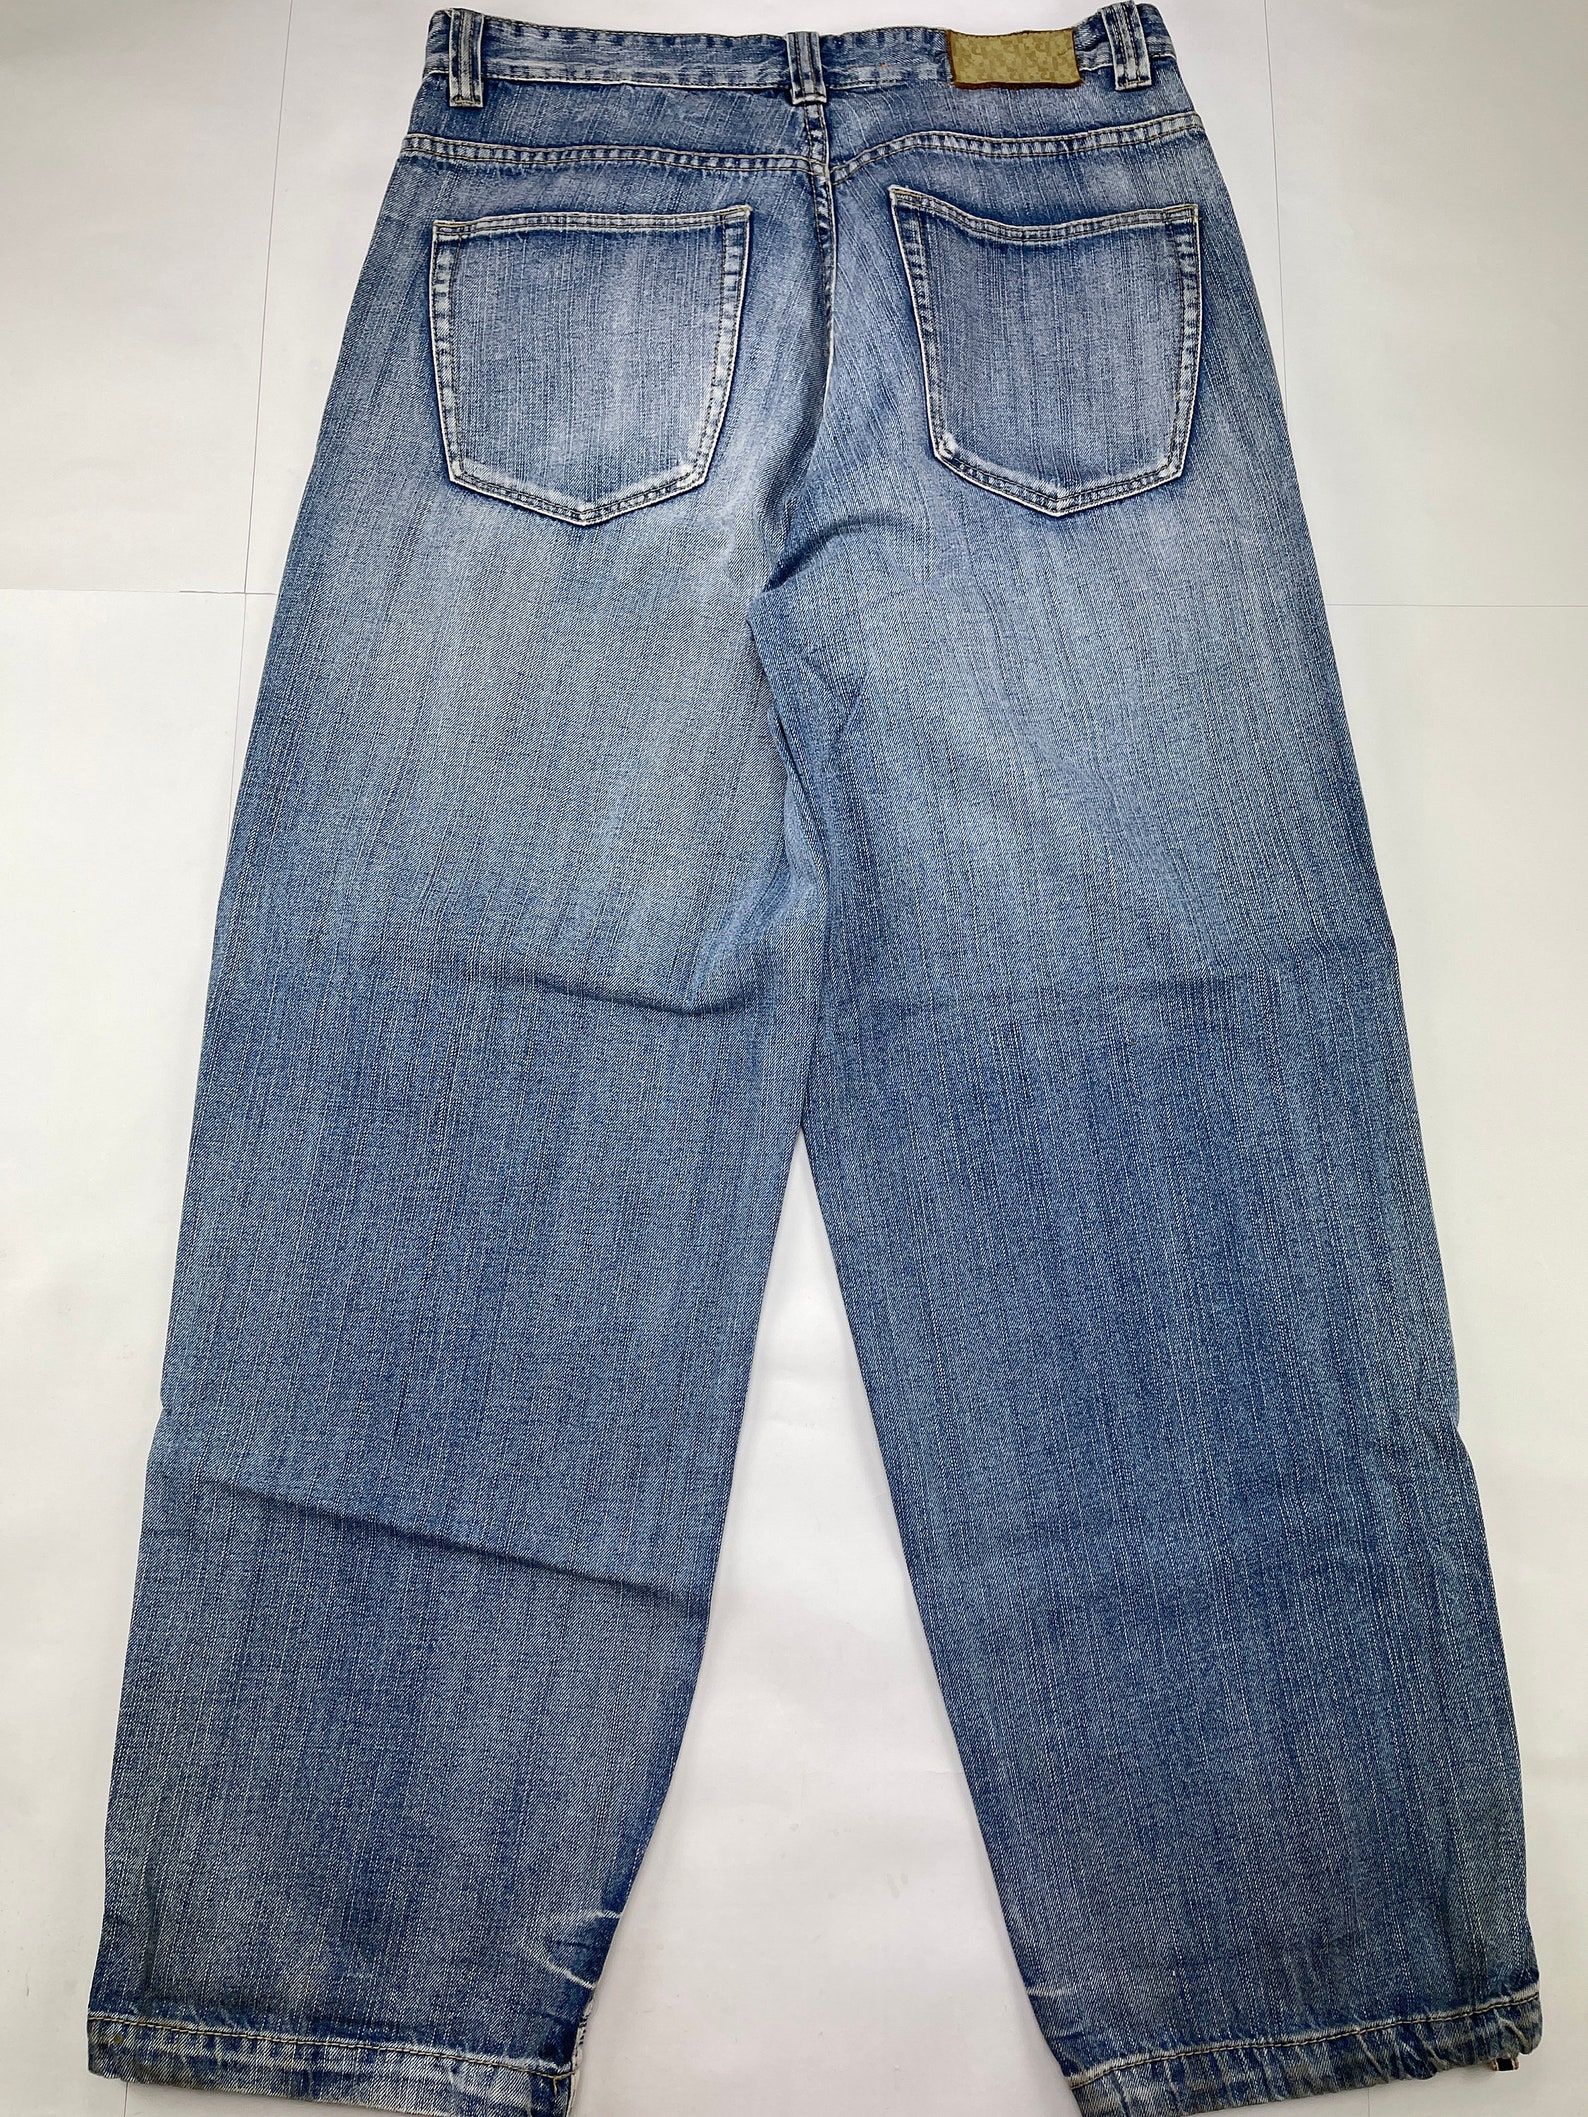 Pelle Pelle jeans blue vintage baggy jeans Marc Buchanan | Etsy